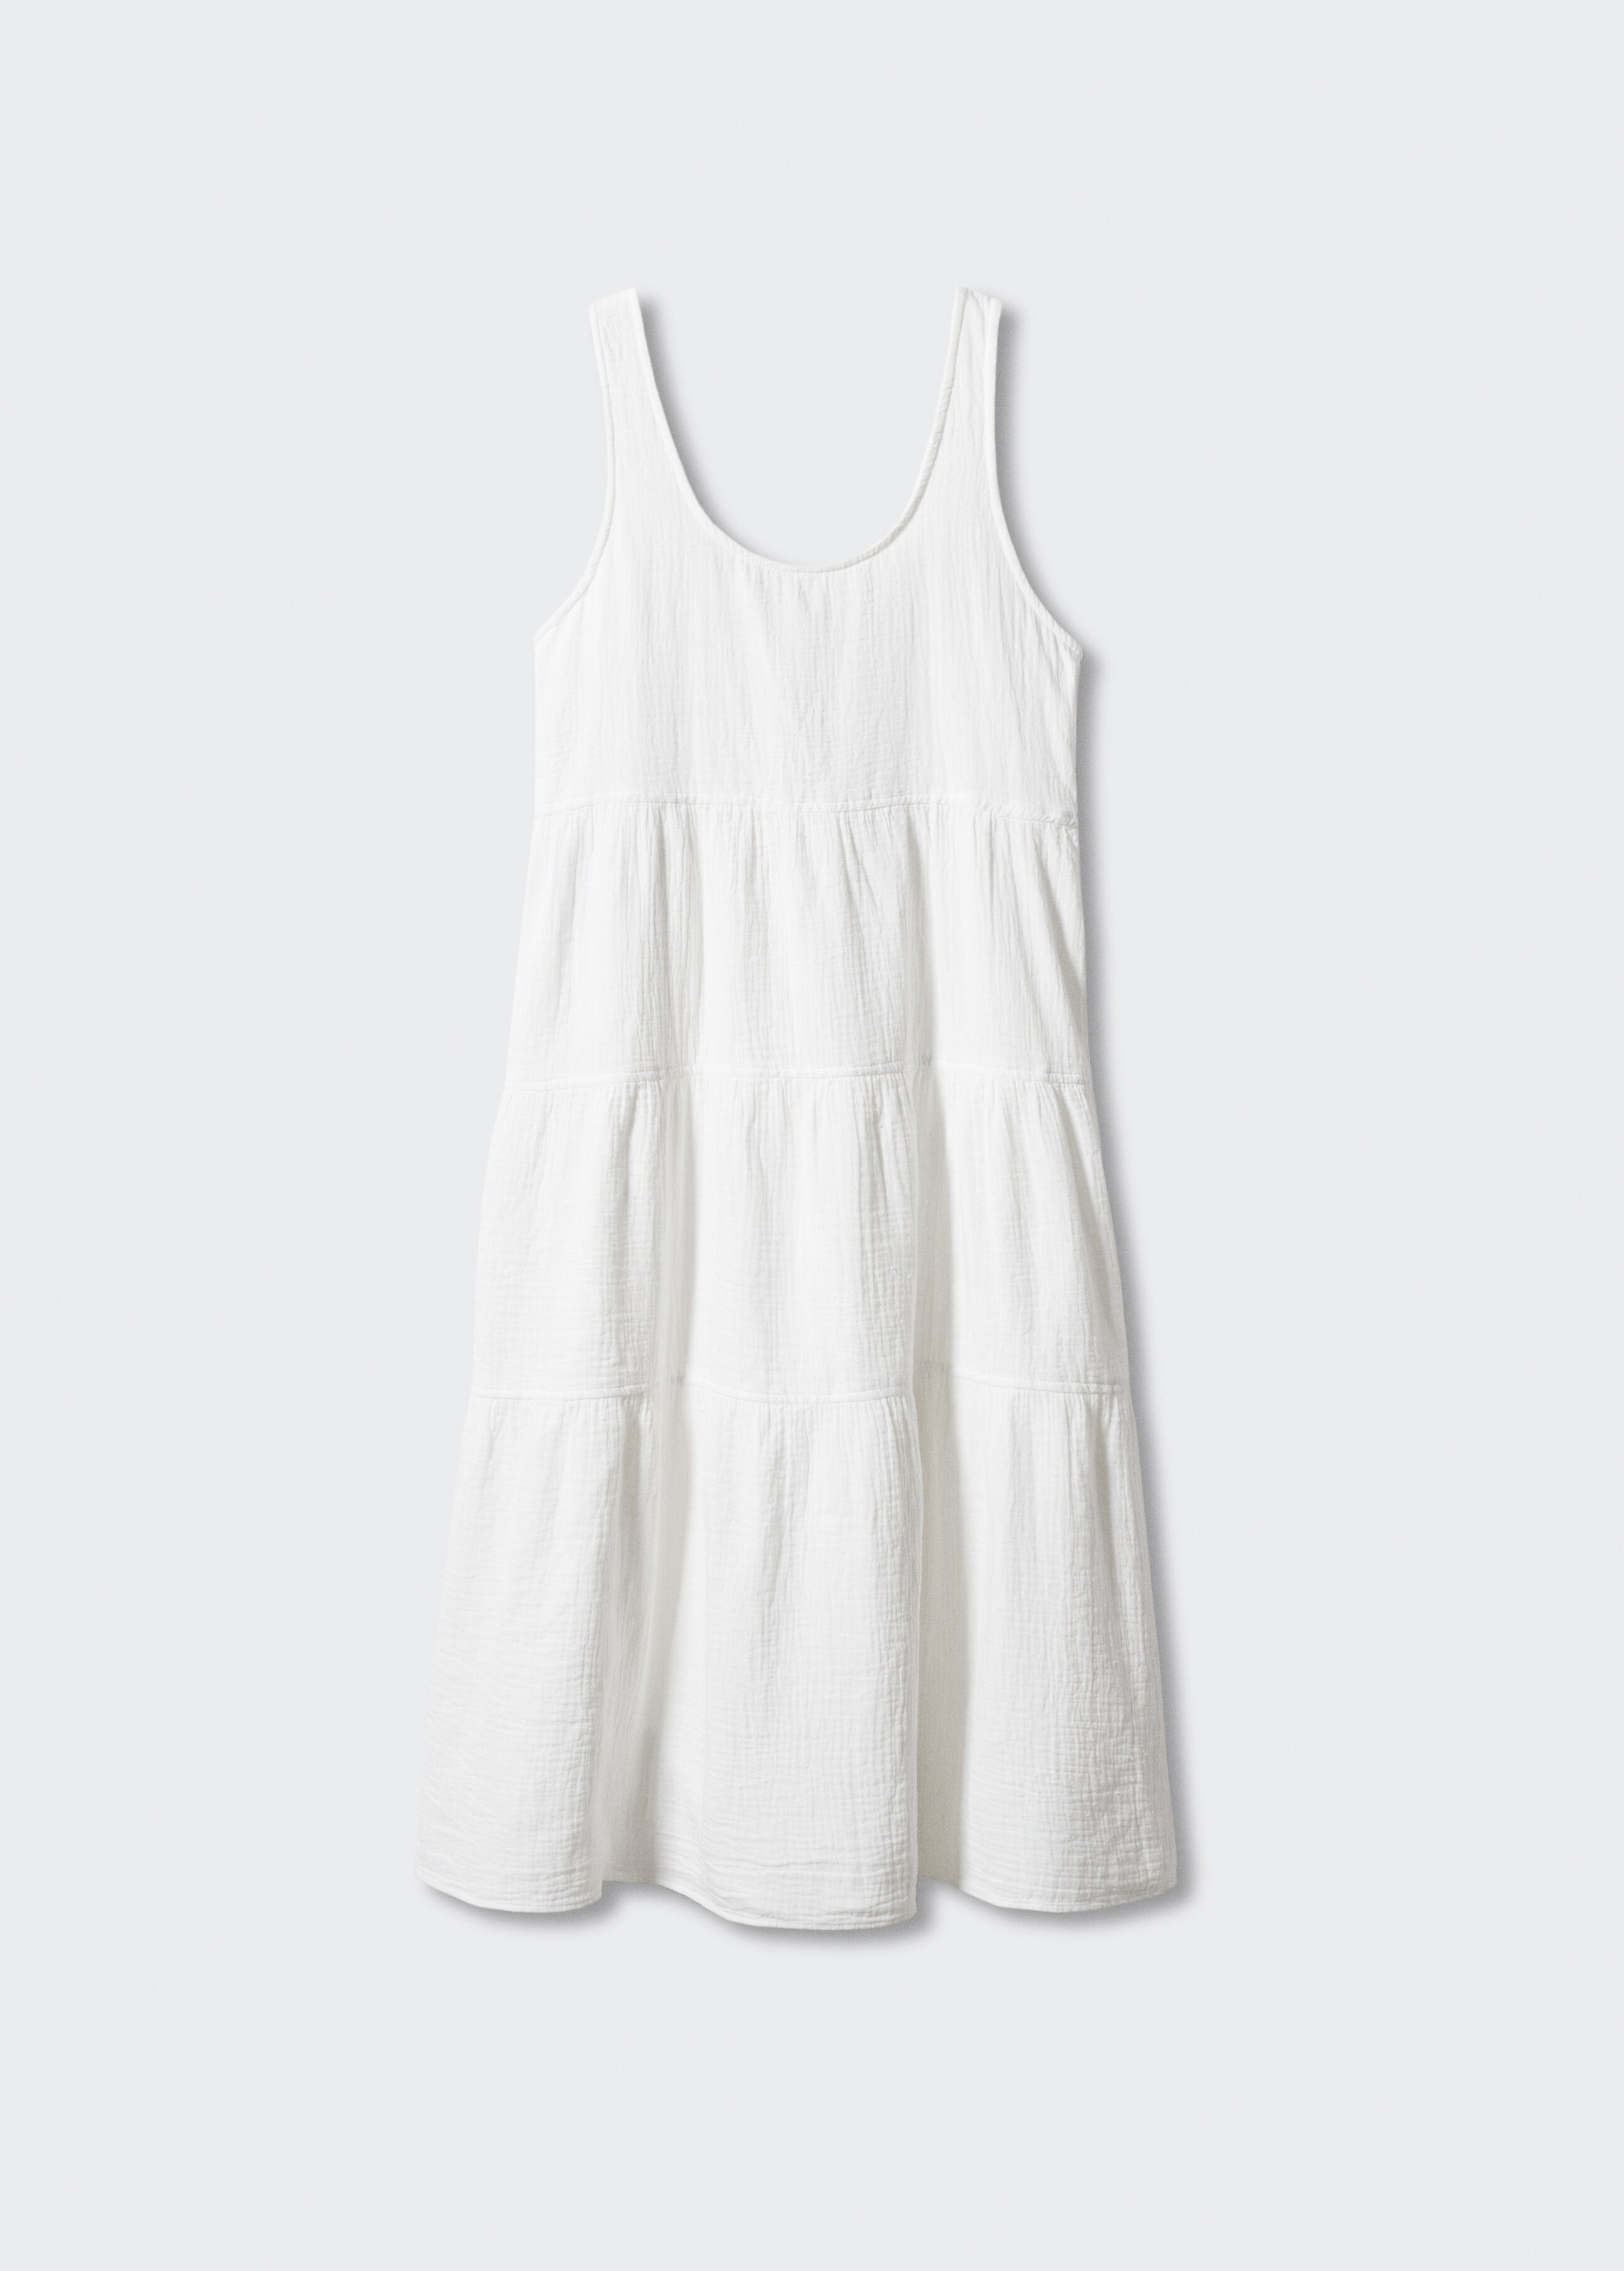 Φόρεμα βαμβάκι βολάν - Προϊόν χωρίς μοντέλο